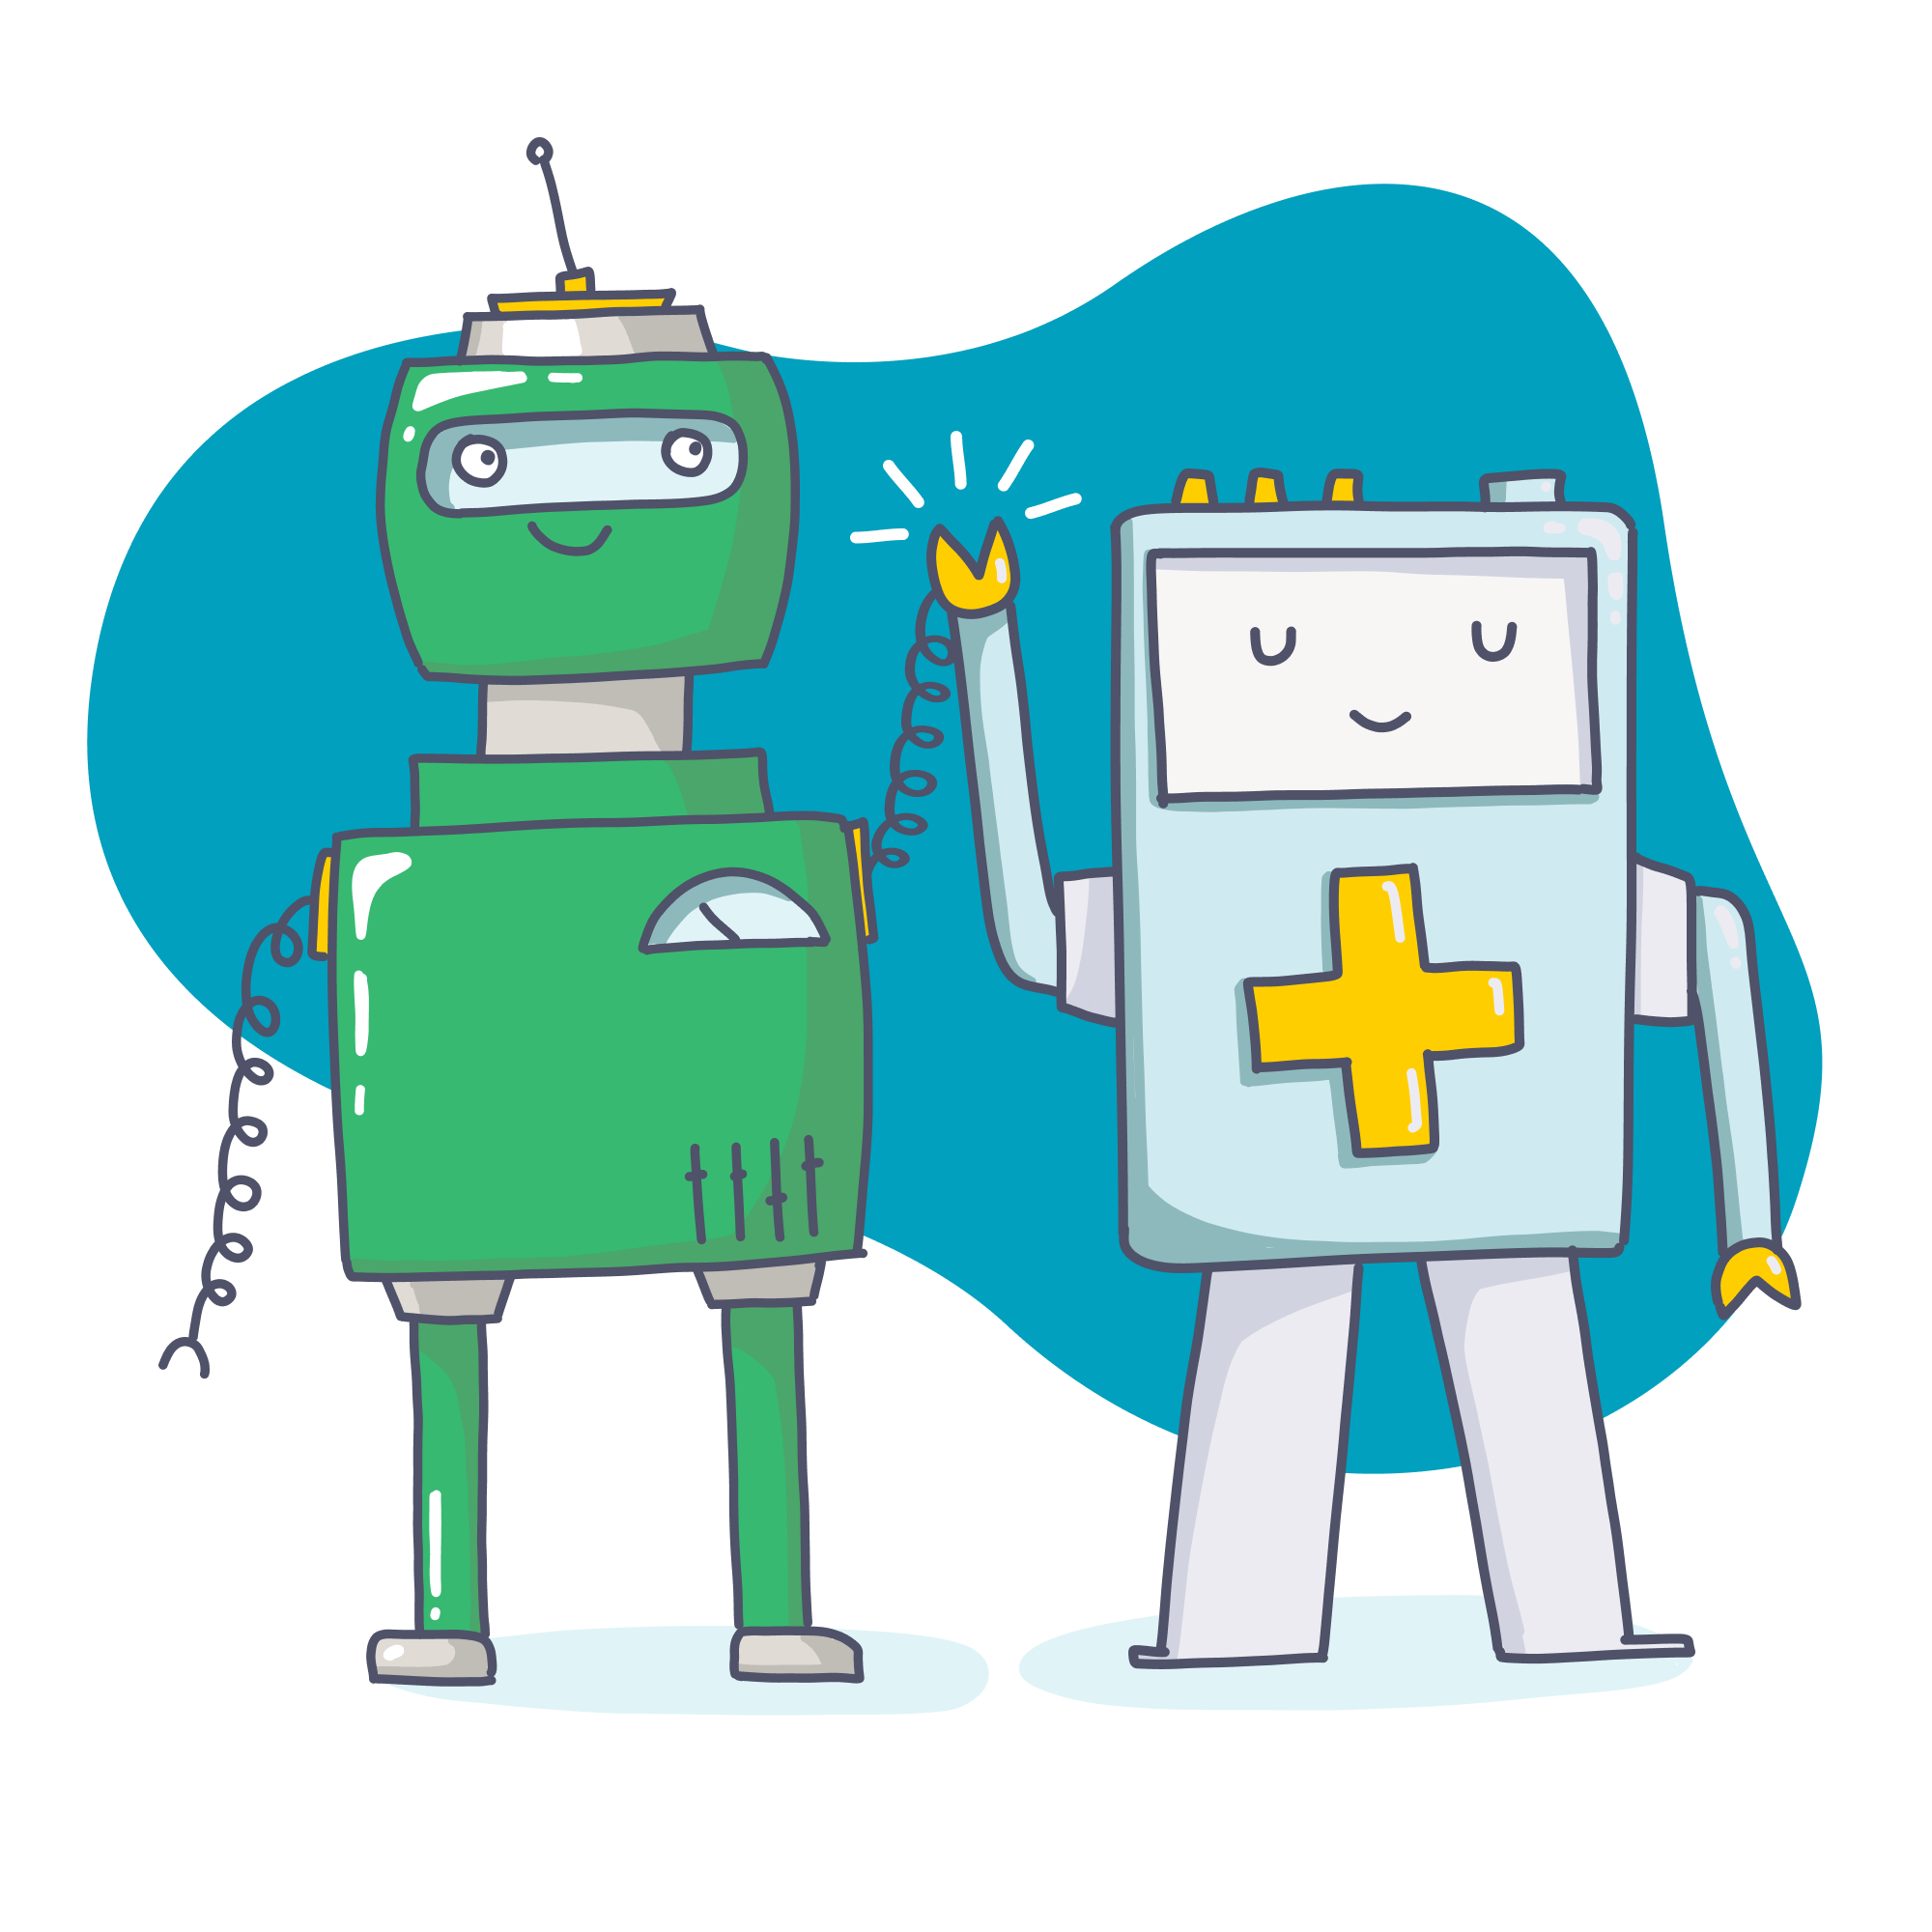 Header Partner und Kooperationen, Illustrationen aus zwei Robotern, die sich einen Handschlag geben, im Hintergrund eine Petrol Farbe